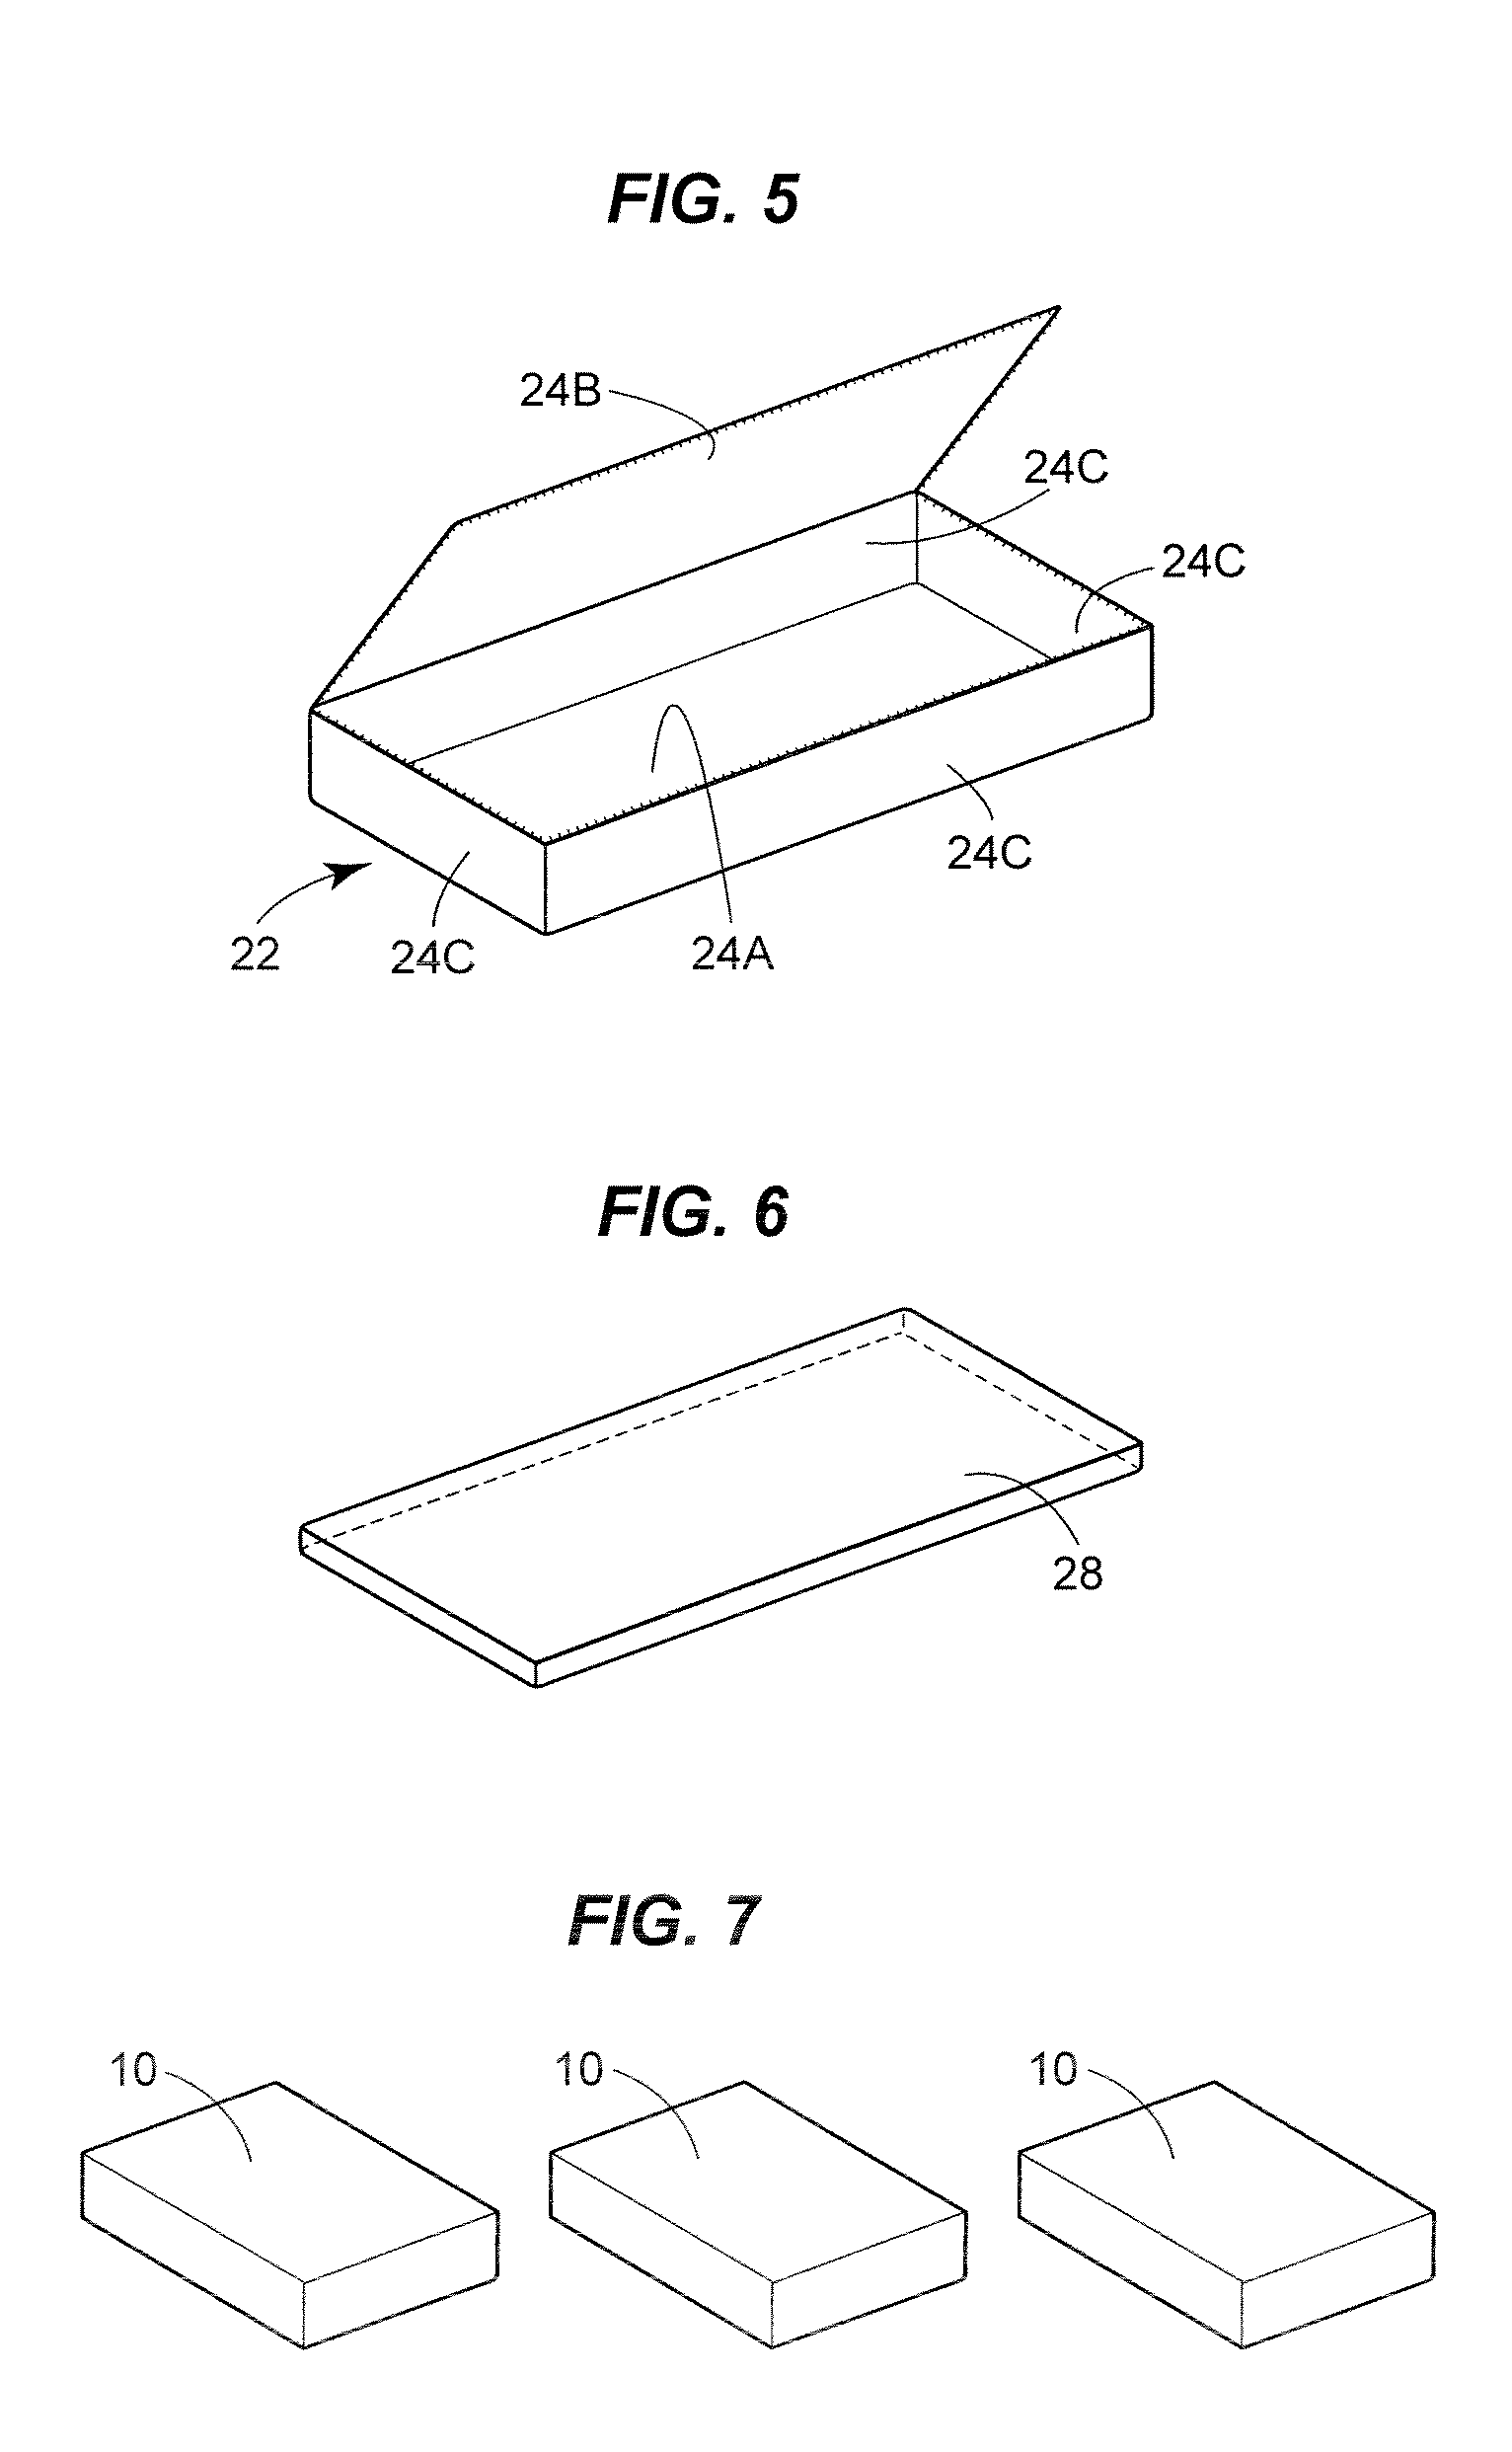 Modular mattress system